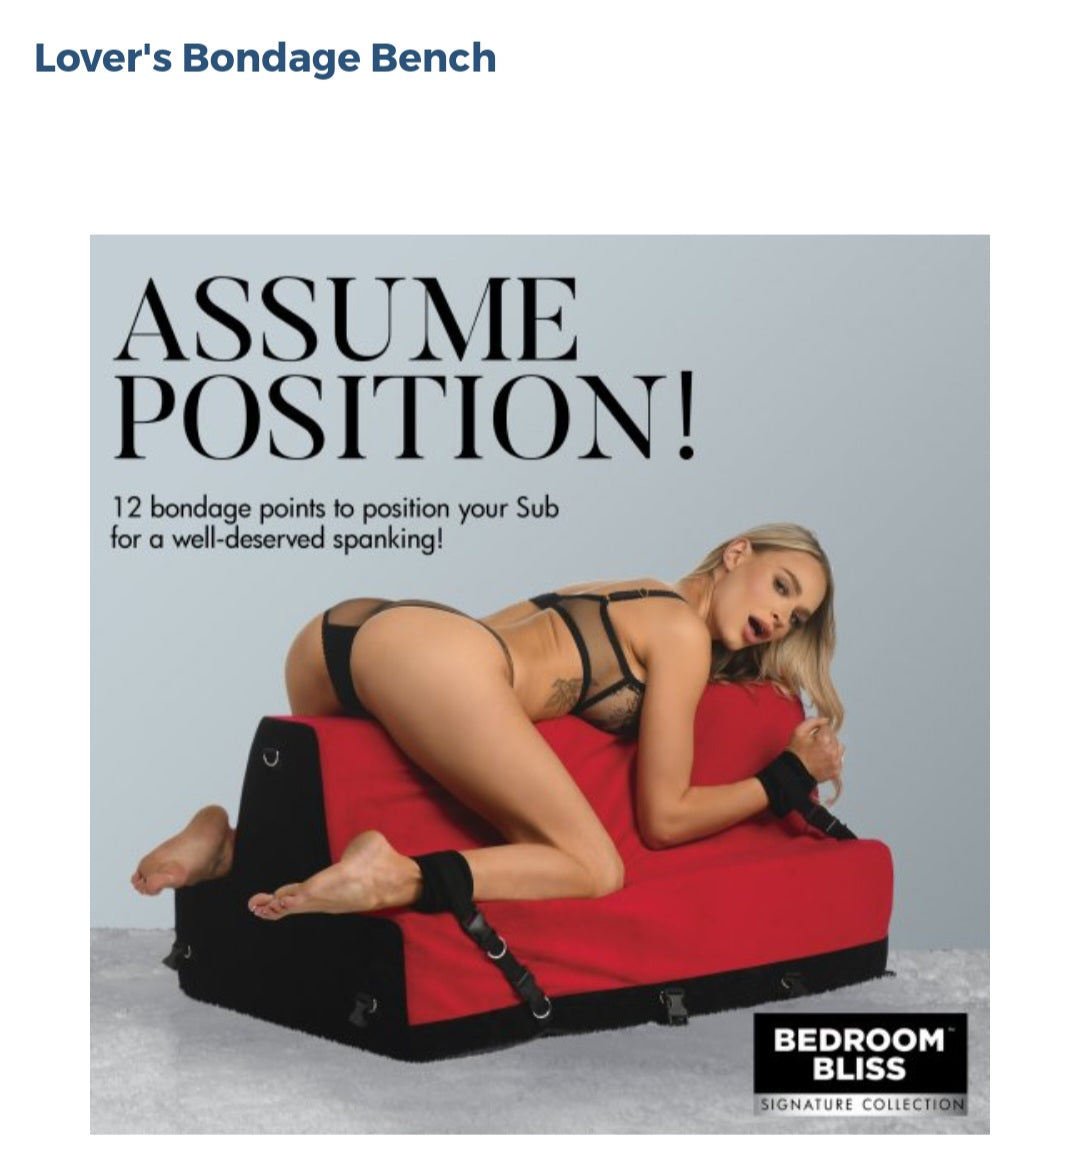 Lover's Bondage Bench